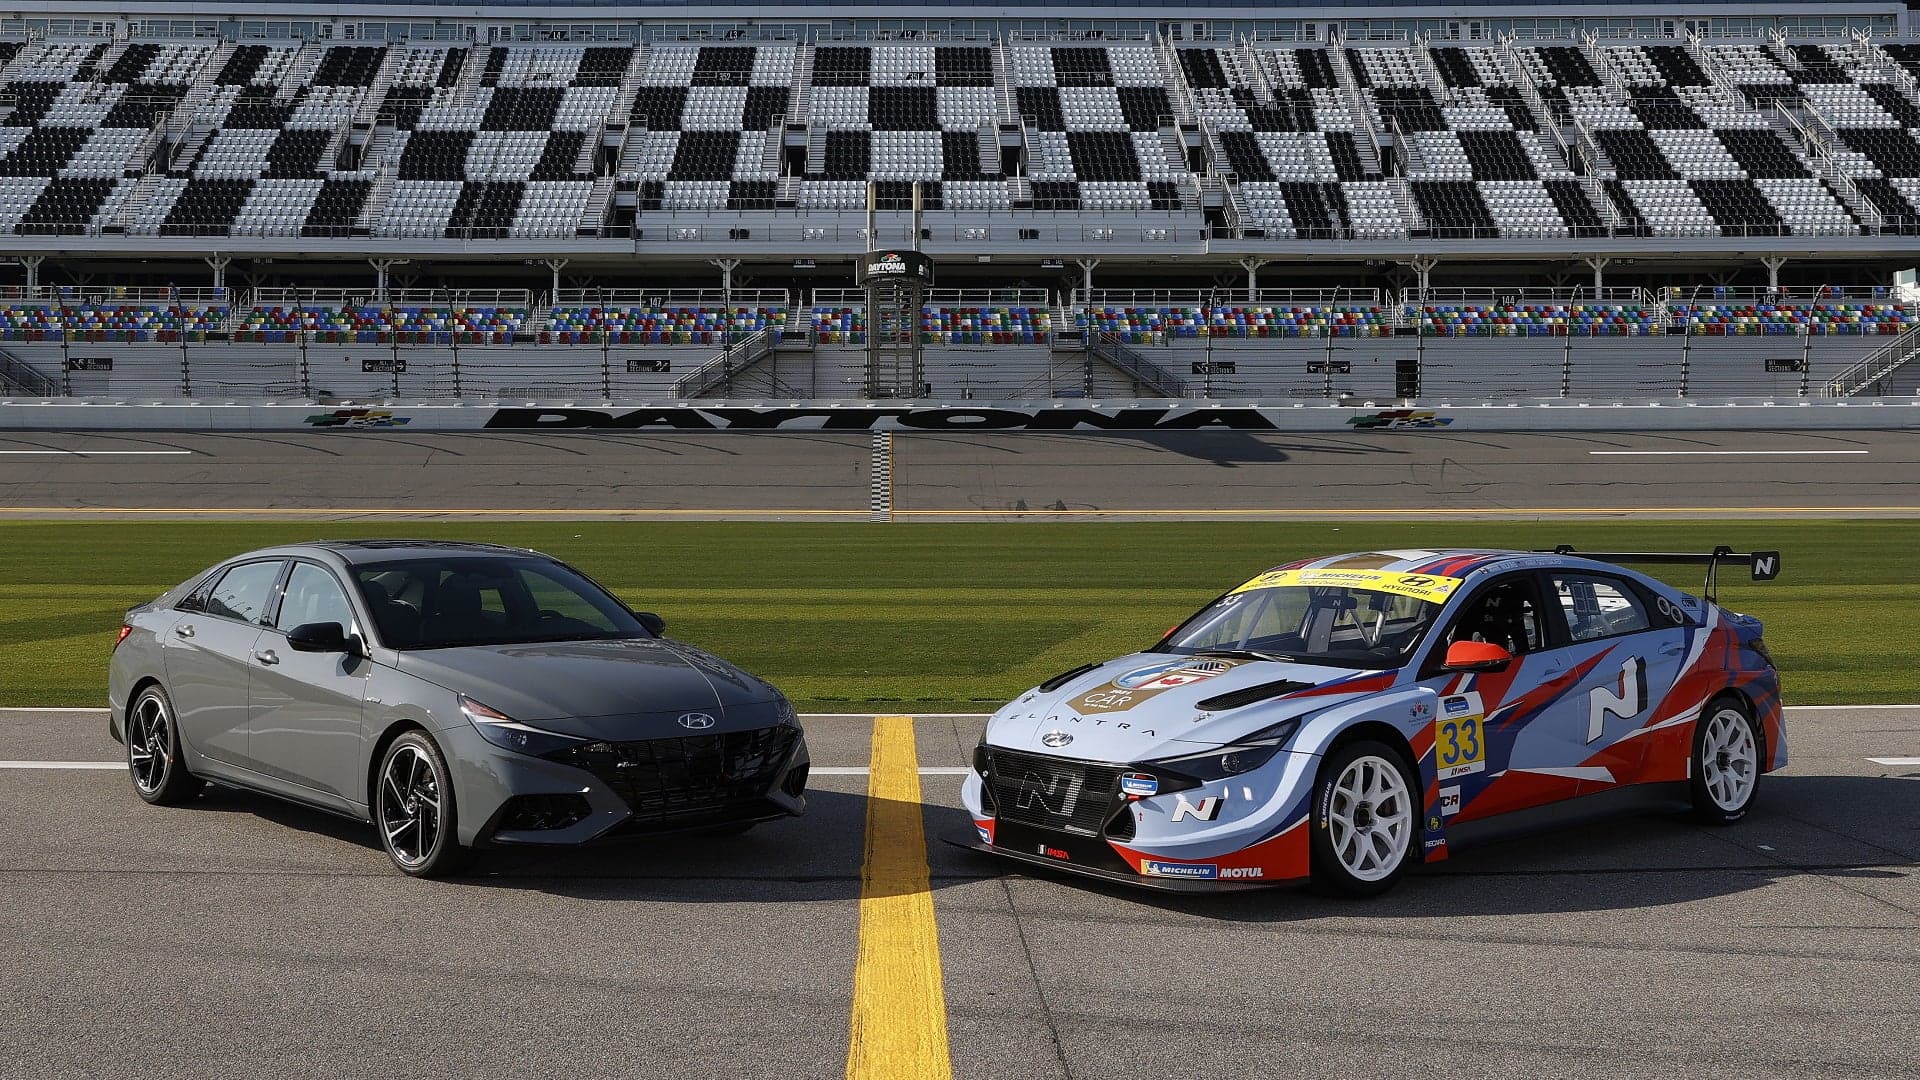 The New Hyundai Elantra N Is Really Going Racing Next Weekend at Daytona